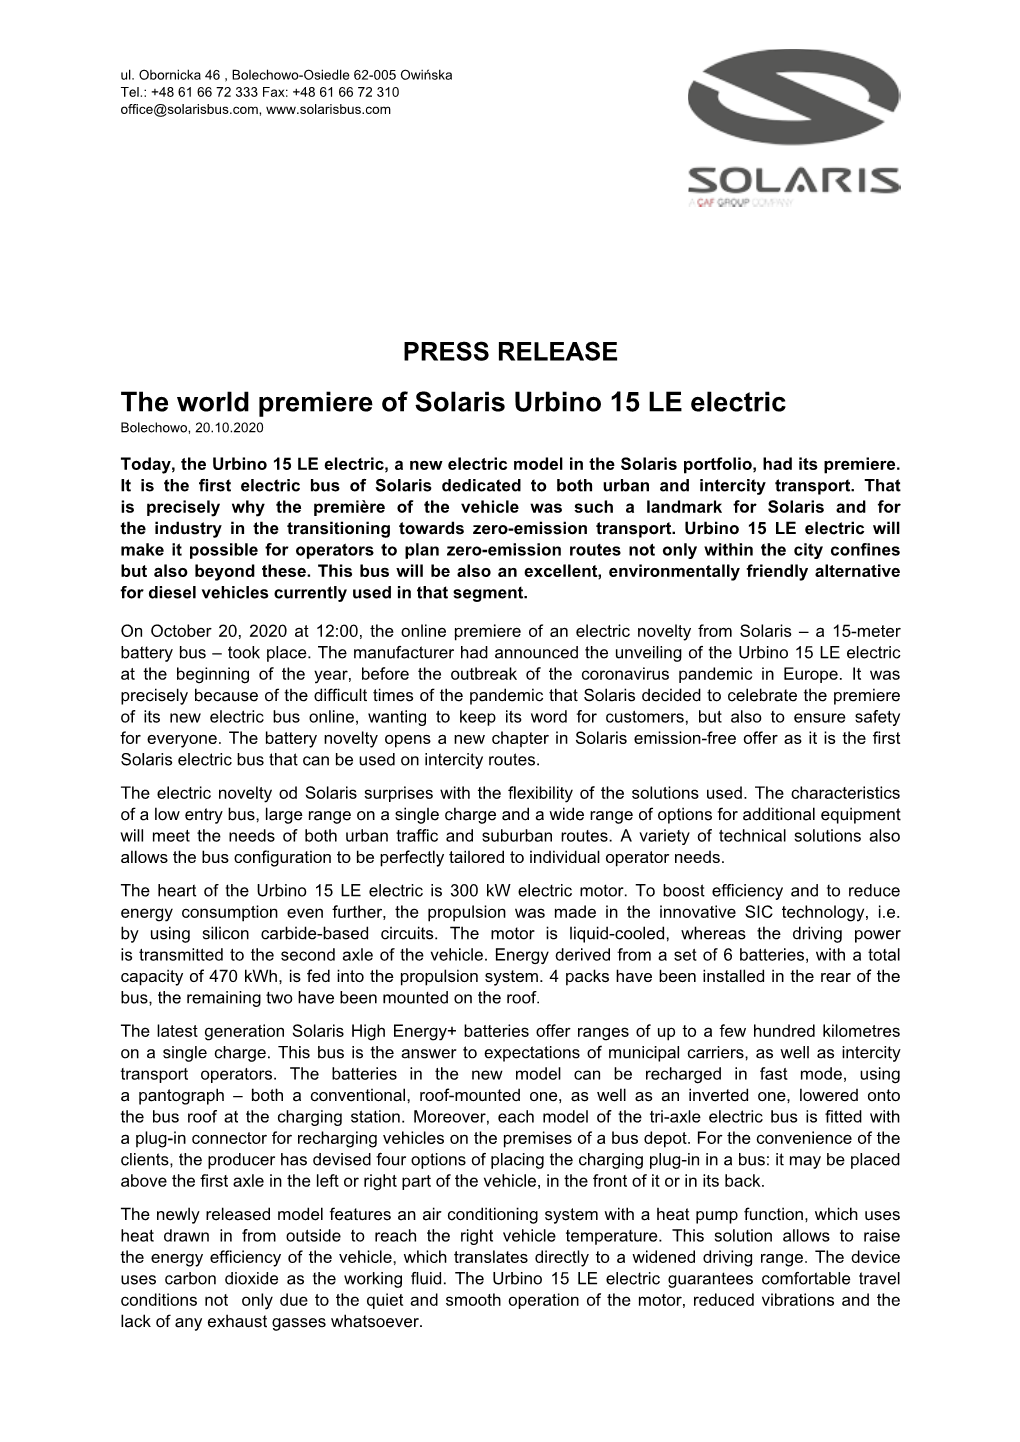 PRESS RELEASE the World Premiere of Solaris Urbino 15 LE Electric